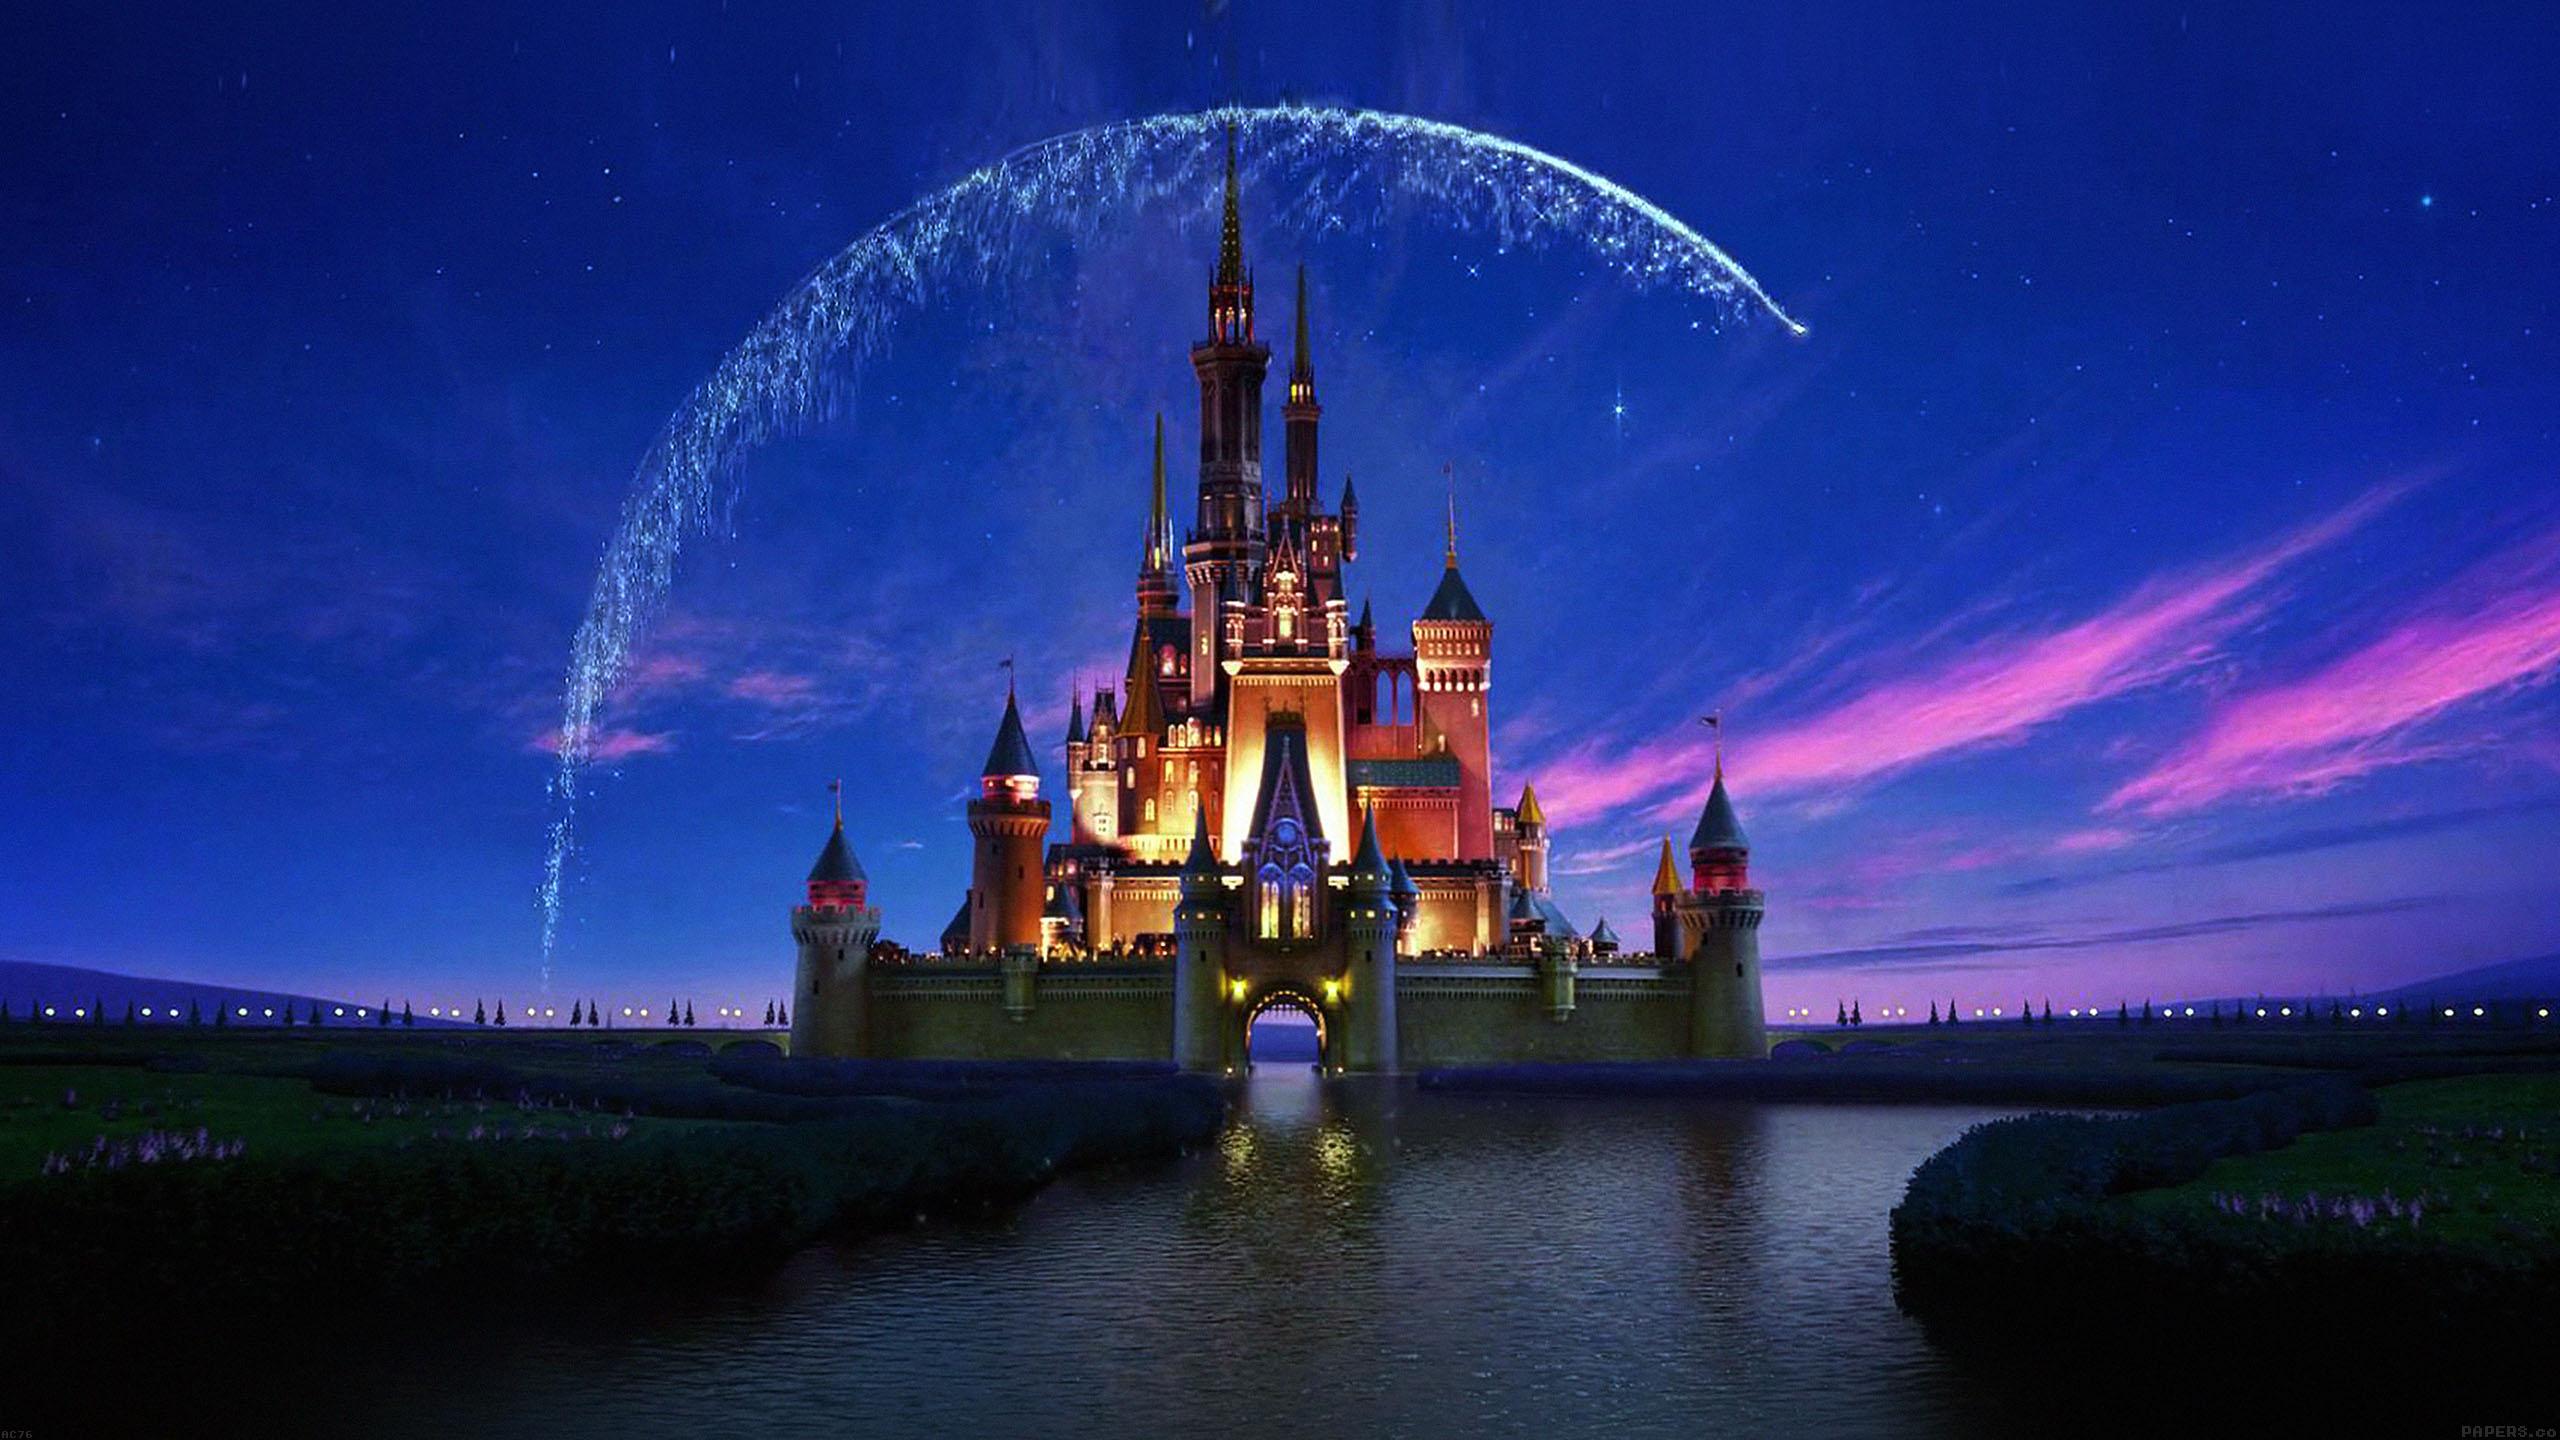 Chào mừng đến thế giới của những nhân vật Disney huyền thoại đầy sắc màu và phép thuật! Những bức hình nền đầy phong cách với các nhân vật phim hoạt hình đã trở thành một trong những chủ đề phổ biến nhất hiện nay. Click ngay để cập nhật cho mình những bức hình nền Disney độc đáo và đáng yêu nhất.